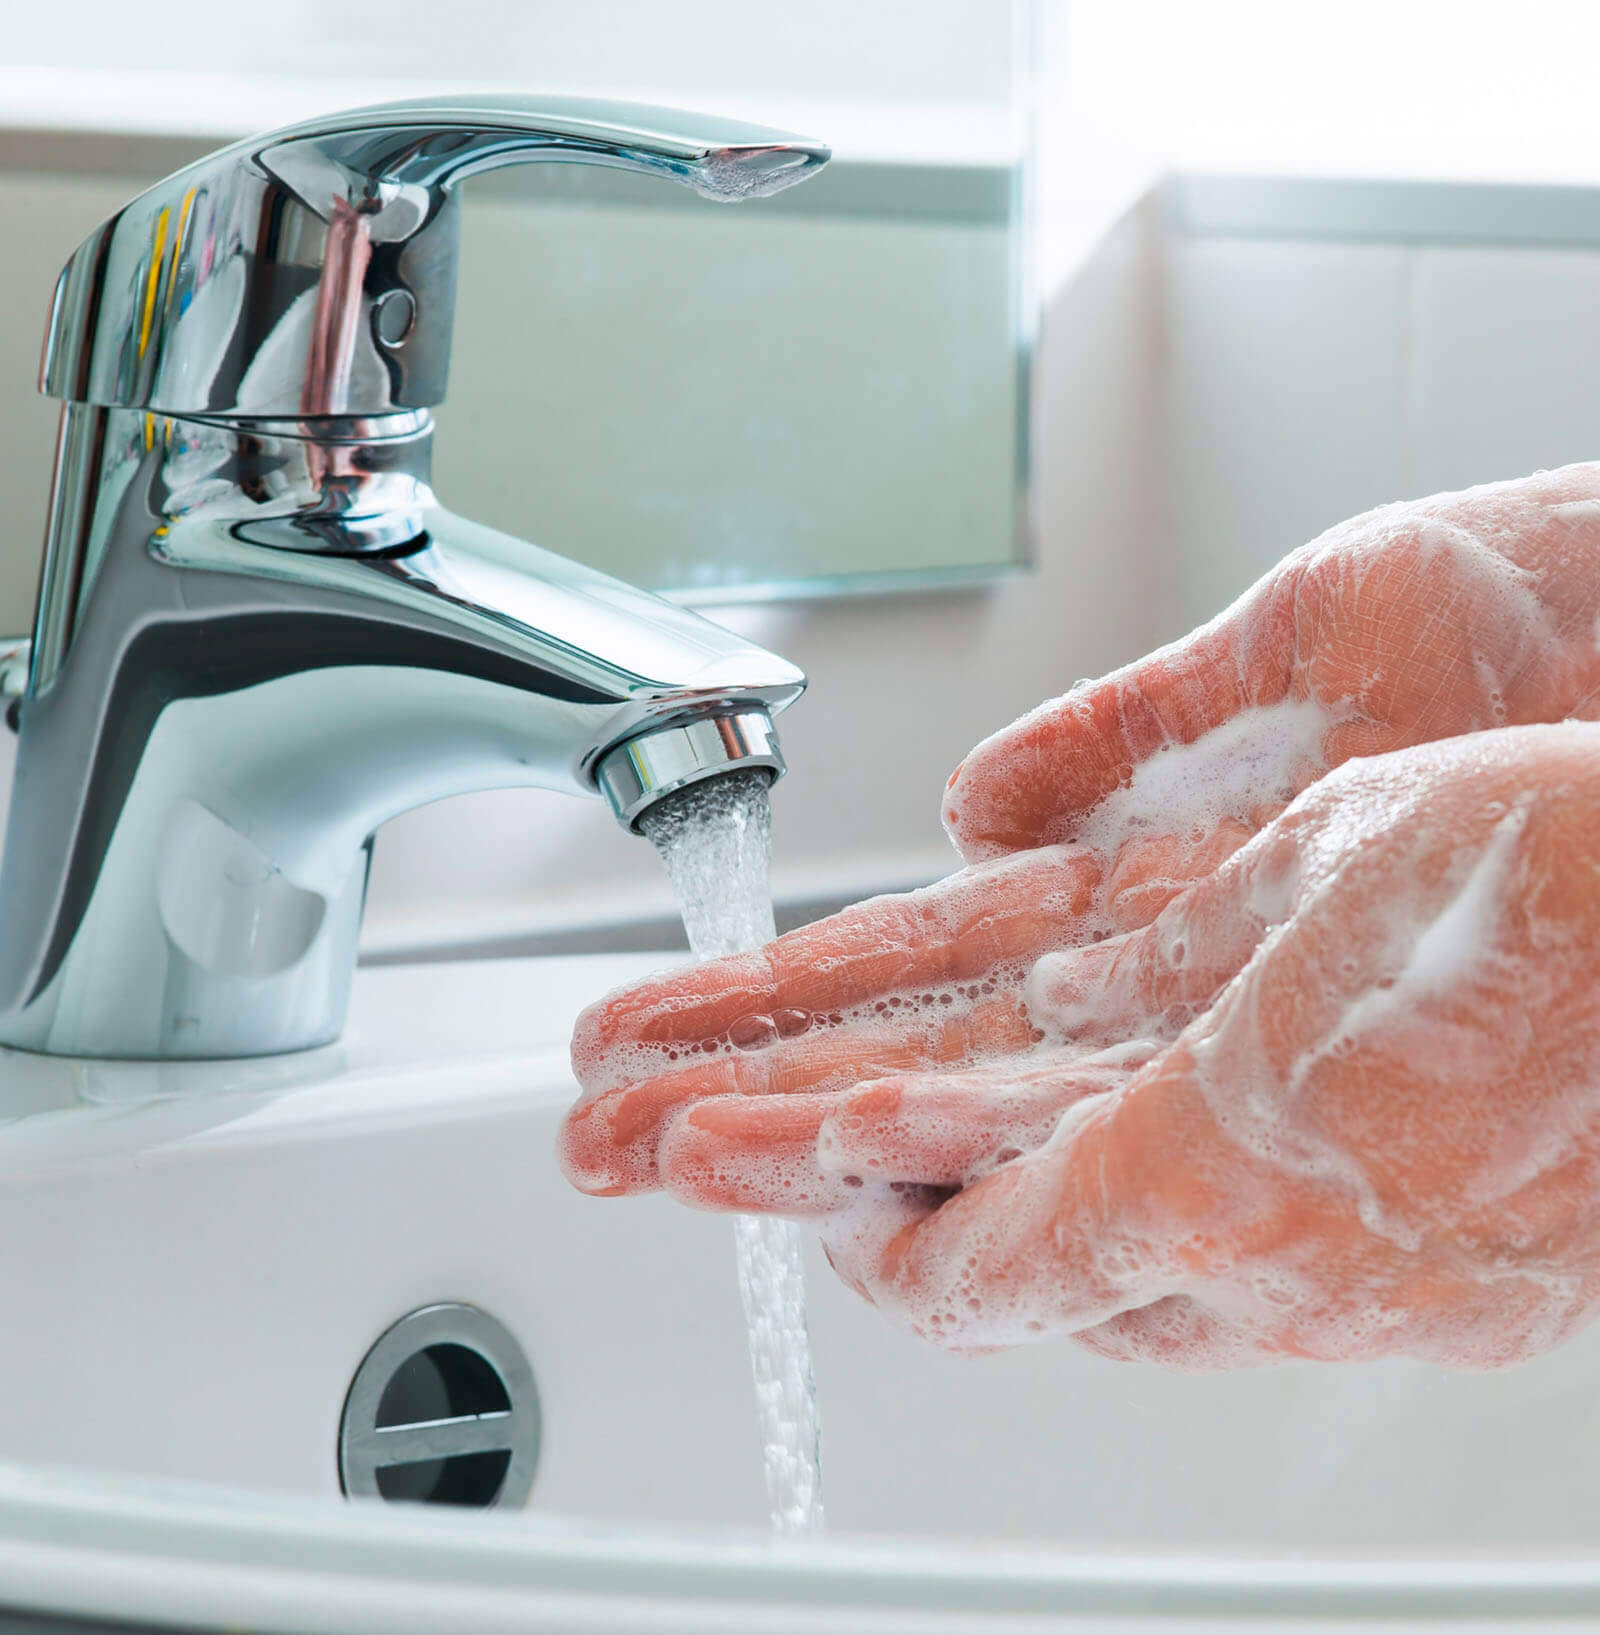 Hände waschen für sicheres Arbeiten bei HDO